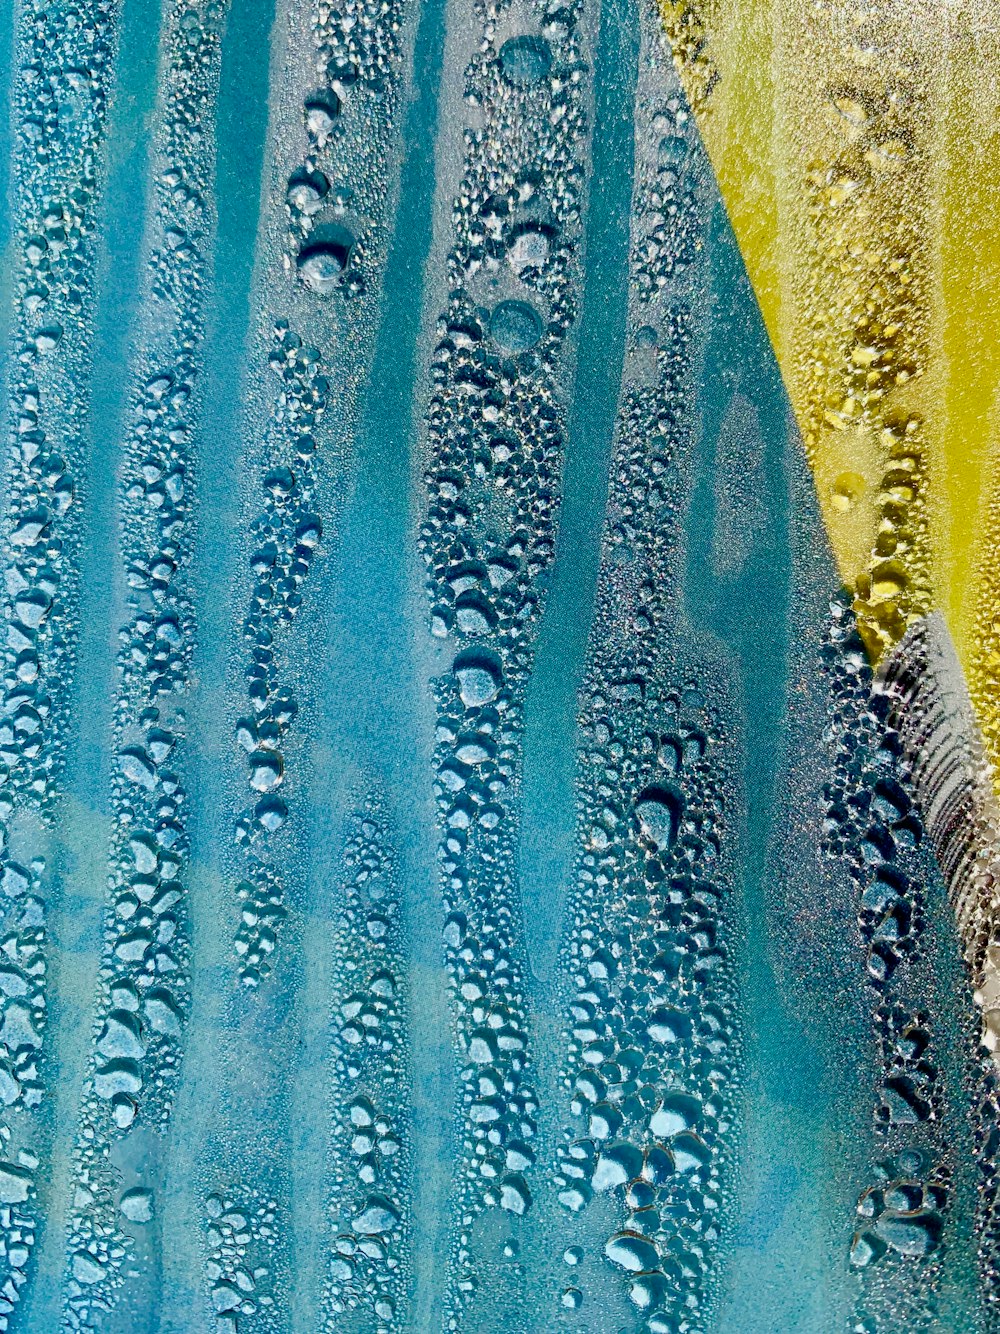 水滴が描かれた青と黄色の絵